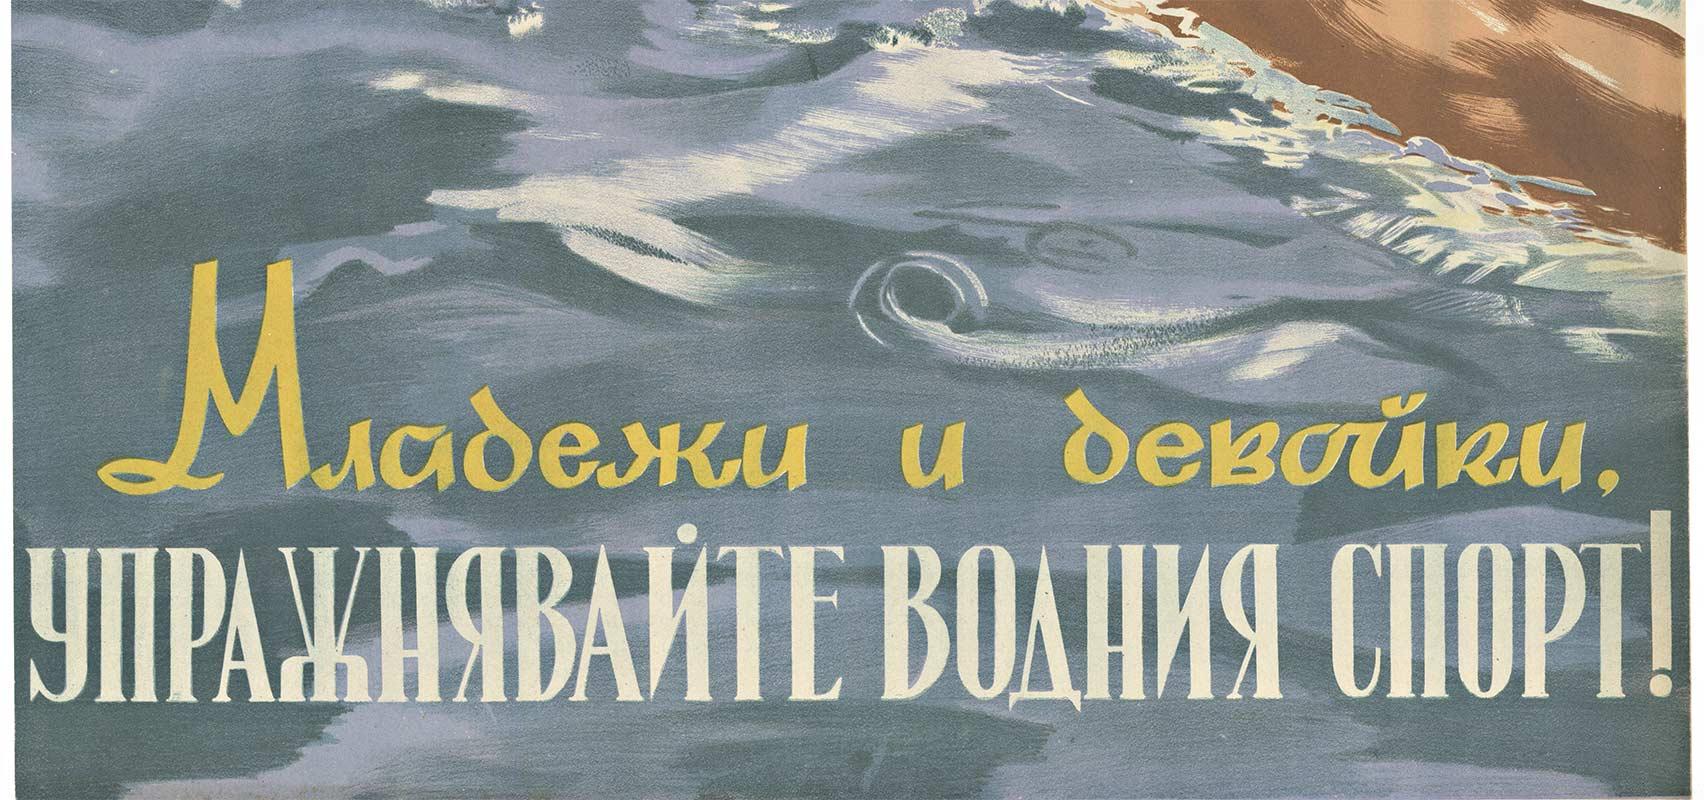 Praxis Practice Wassersport, Eastern Block Original-Vintage-Plakat – Print von Unknown